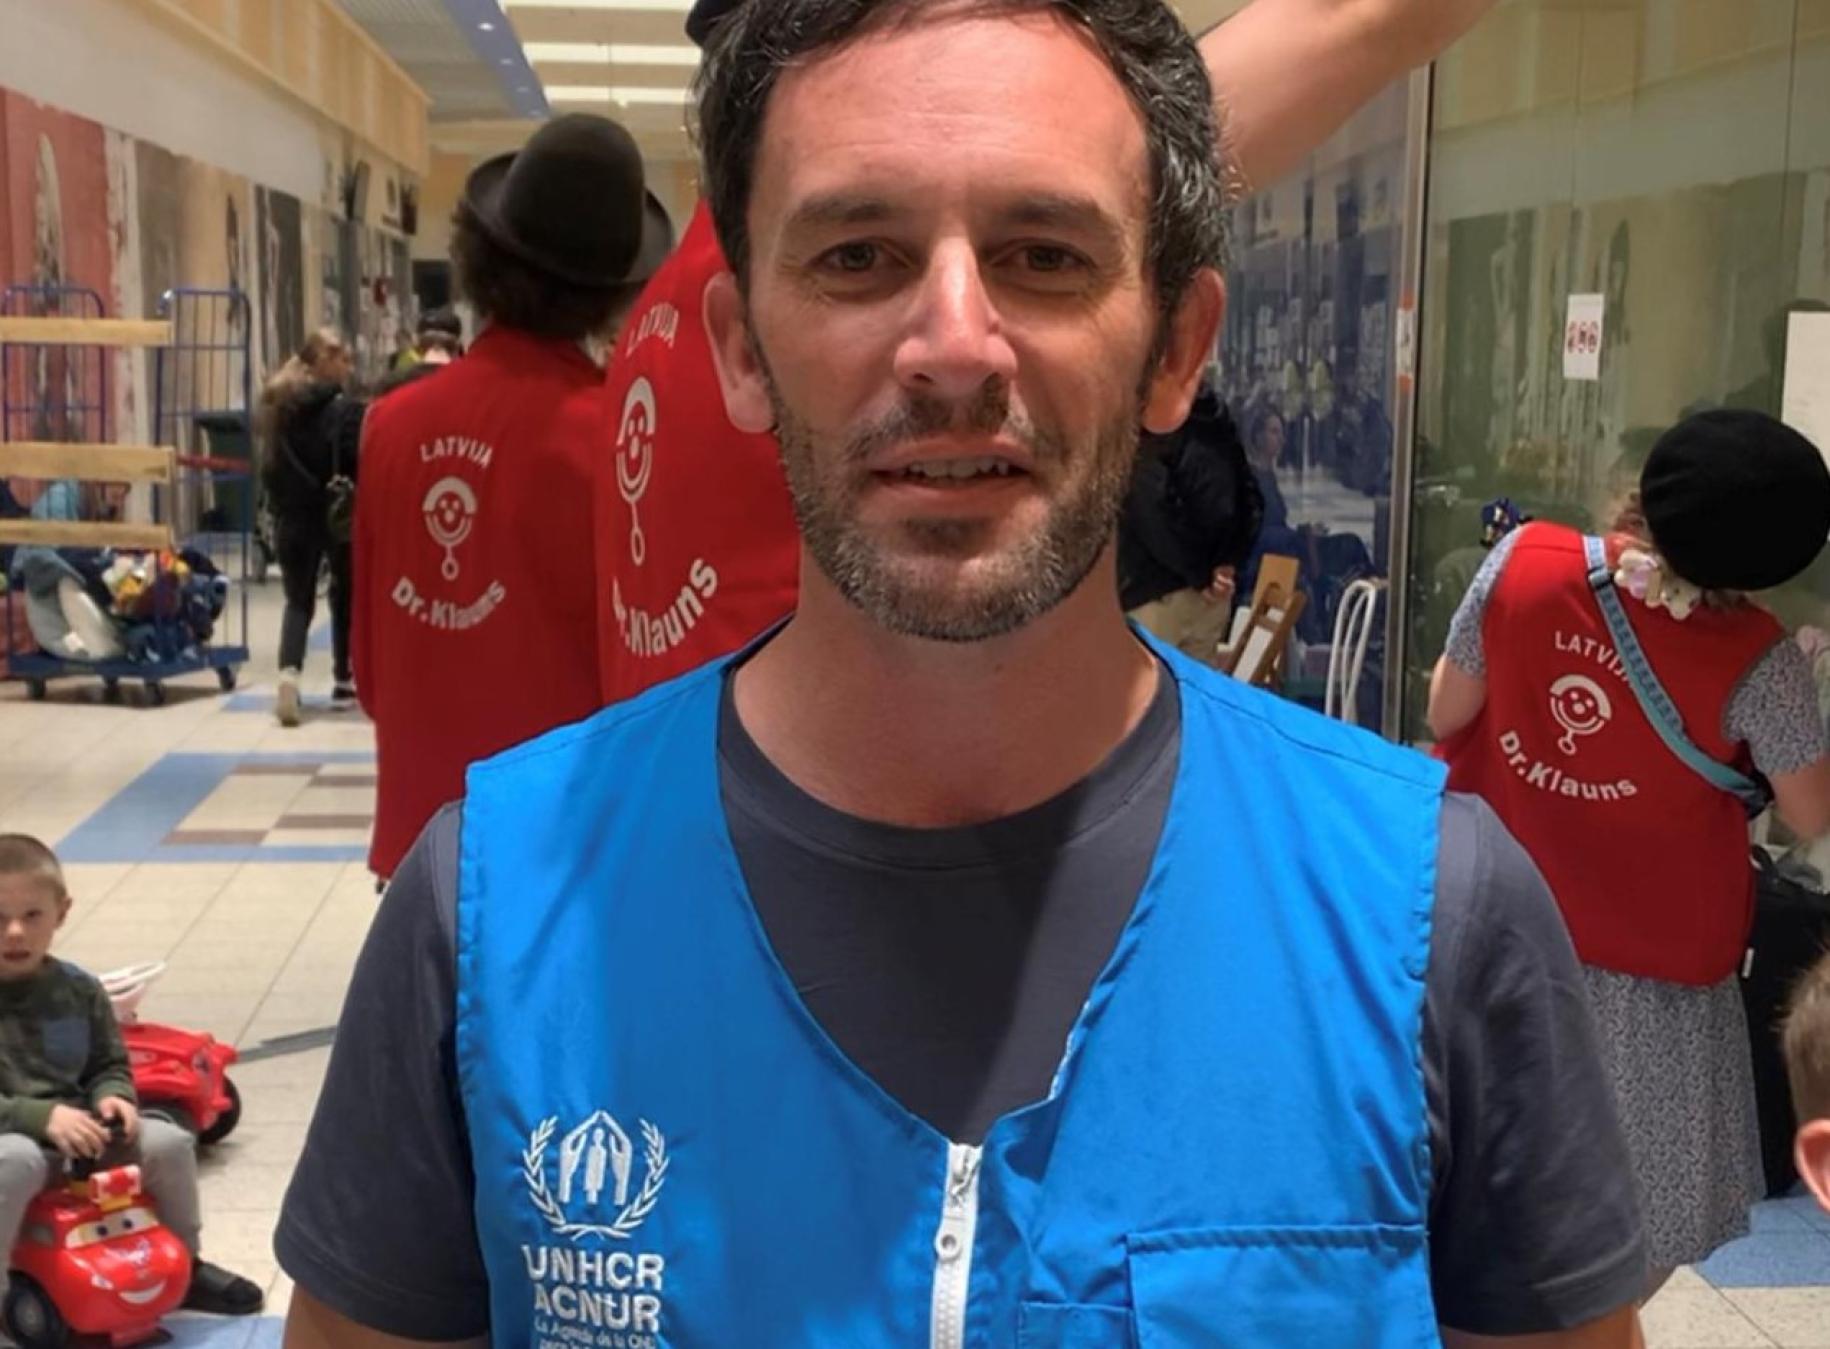 Dans un espace intérieur, un homme portant le gilet bleu du HCR s'adresse à la caméra en souriant. En arrière-plan, des personnes portant un gilet rouge s'affairent autour d'un groupe de réfugiés.